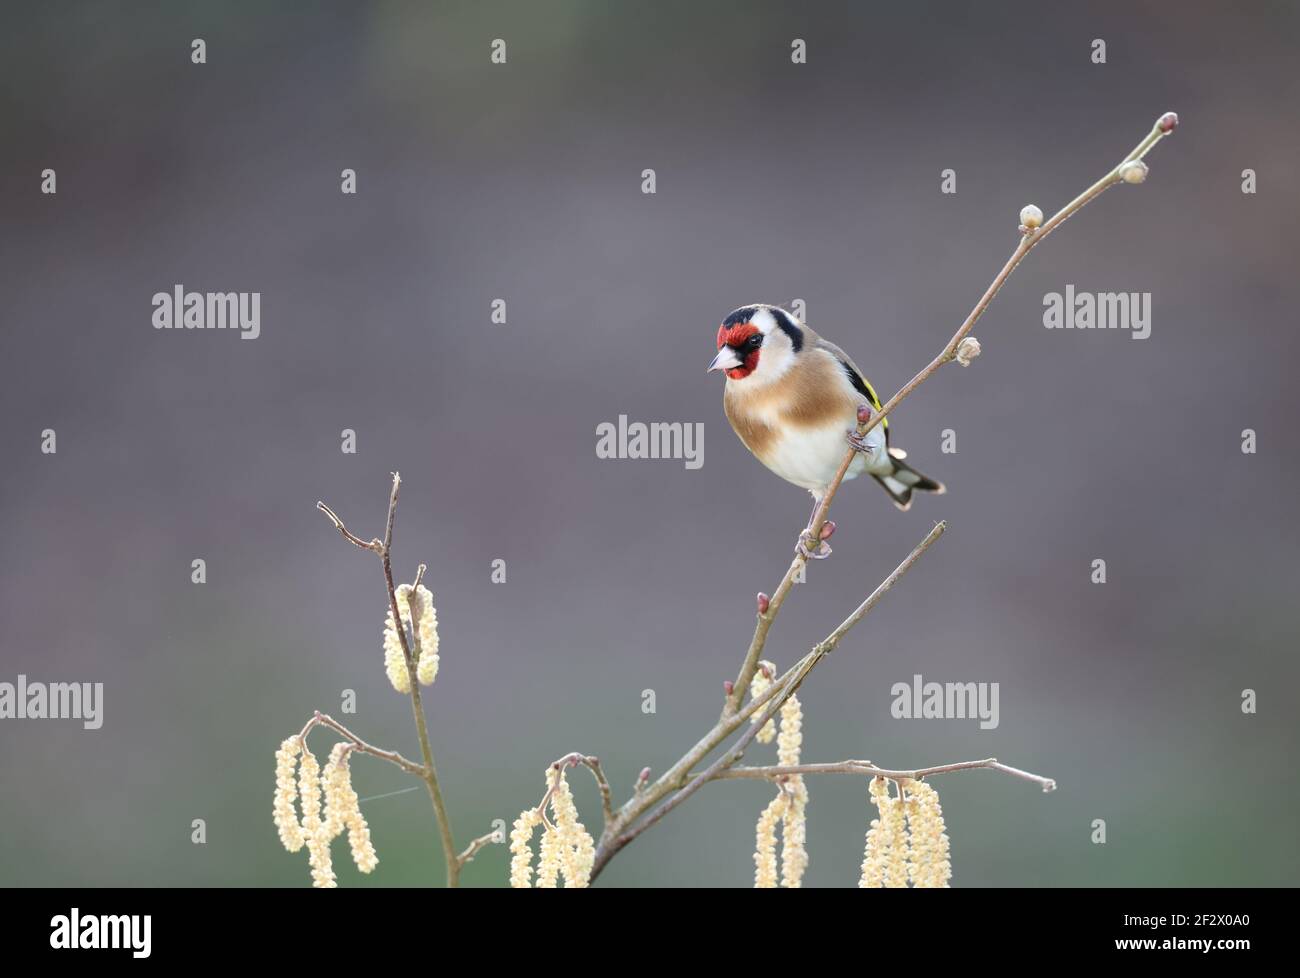 Européen Goldfinch, Carduelis carduelis, perché sur une branche en hiver. Pays de Galles 2021 Banque D'Images